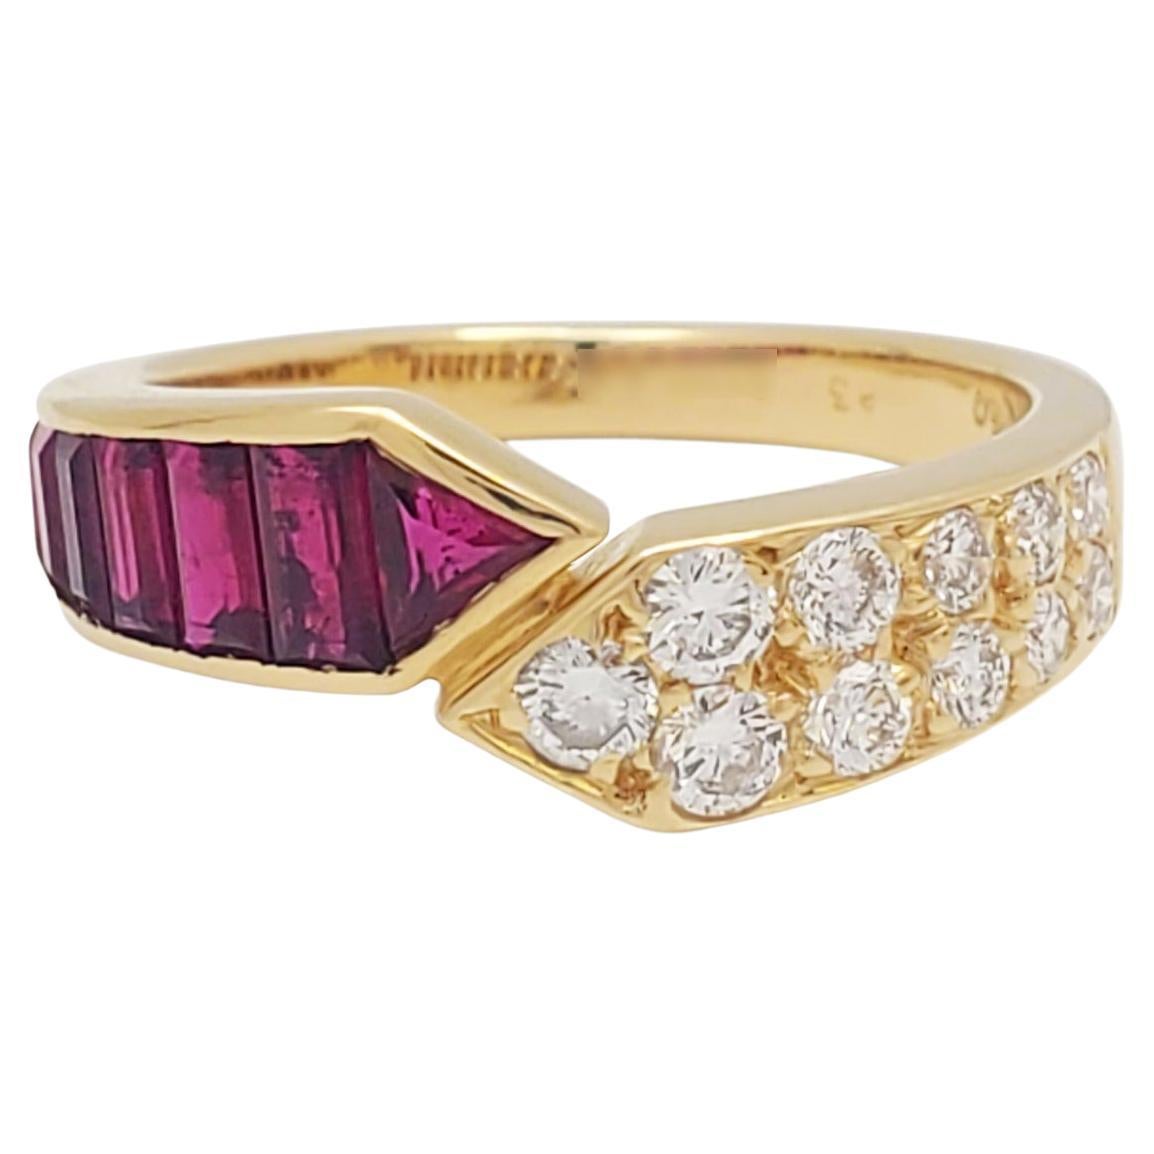 Van Cleef & Arpels Ruby and Diamond Ring